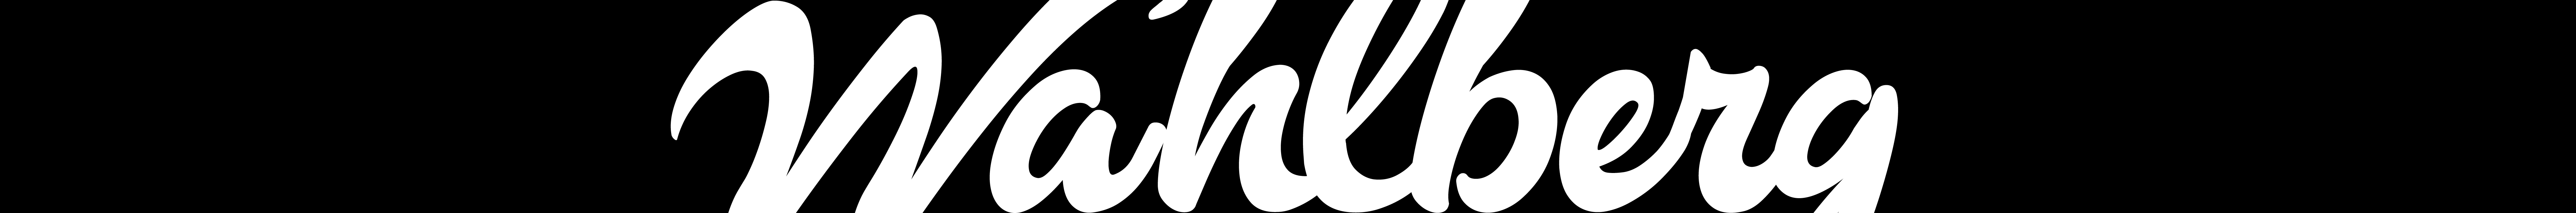 Profil-Banner von Niklas Wahlberg